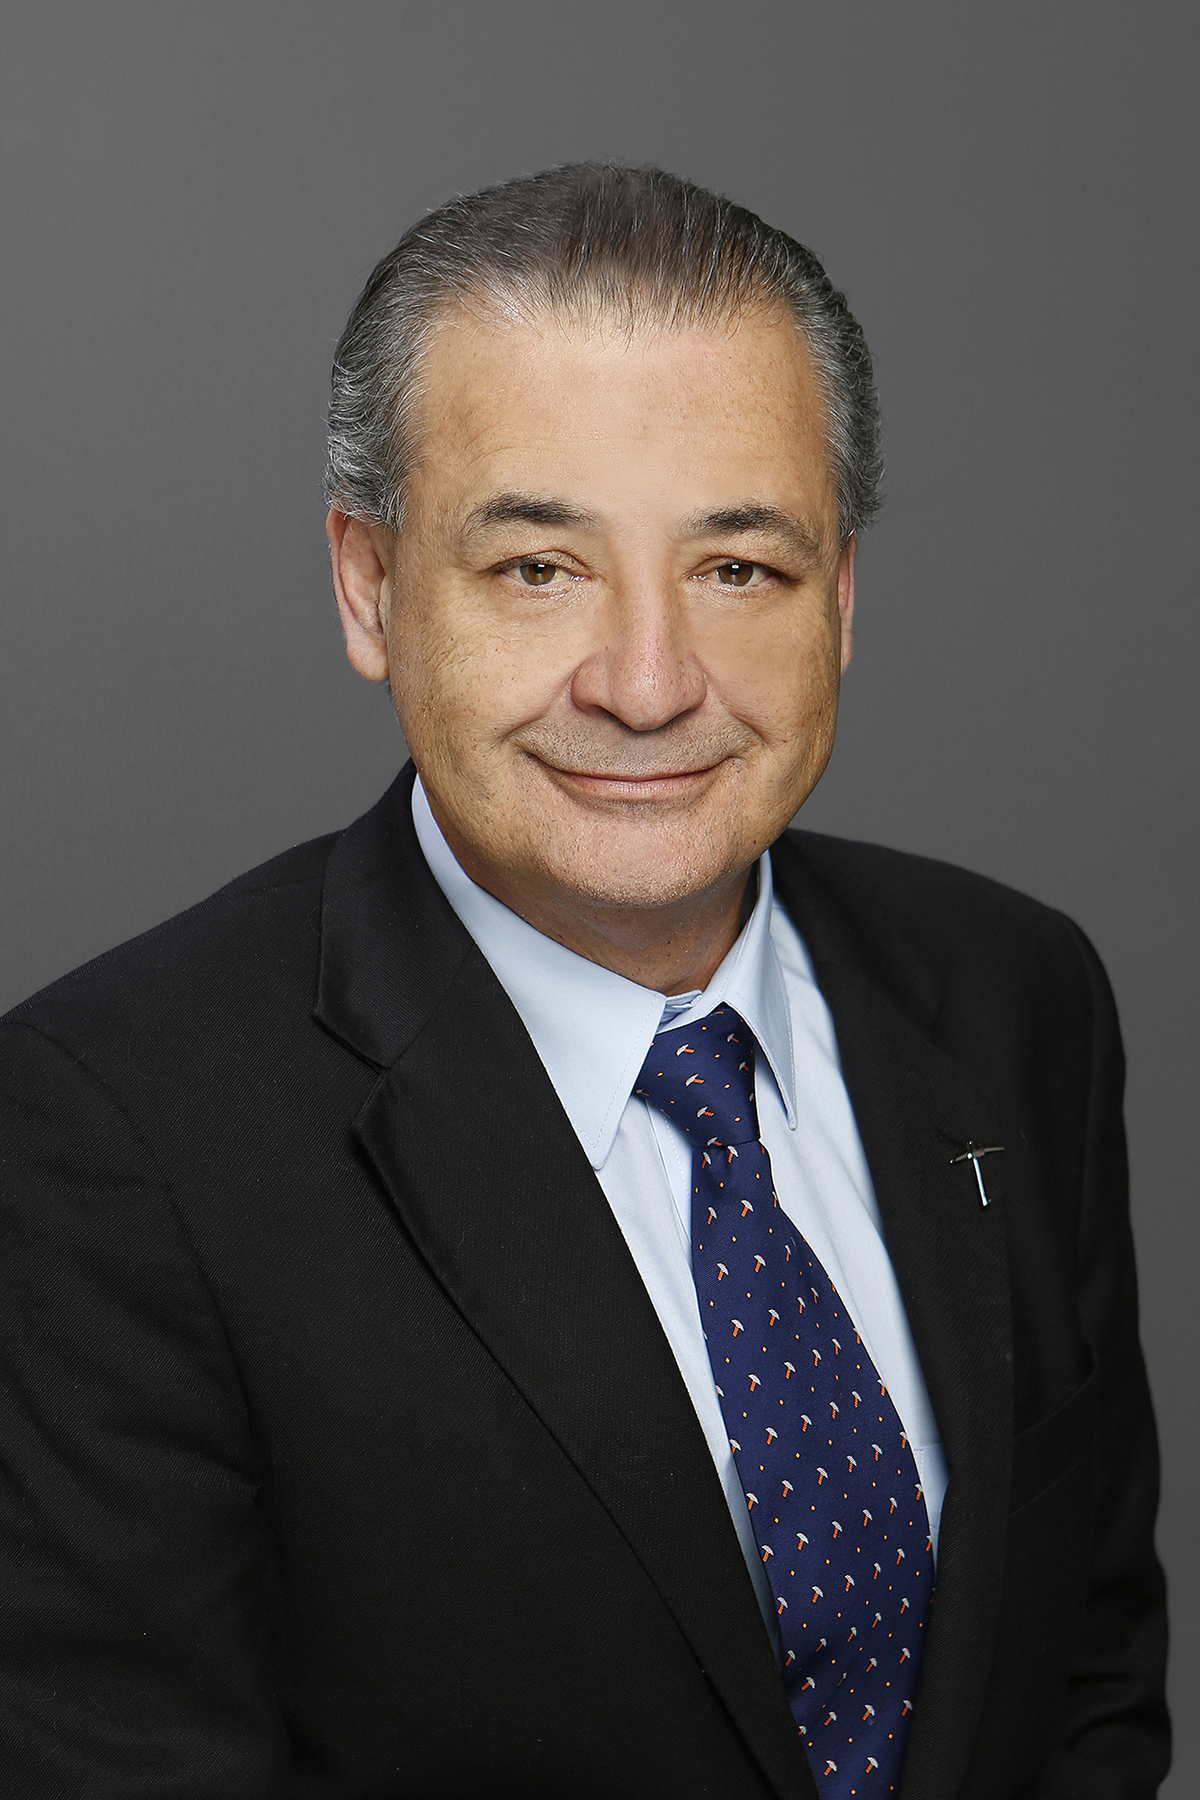 Roberto A. Osegueda